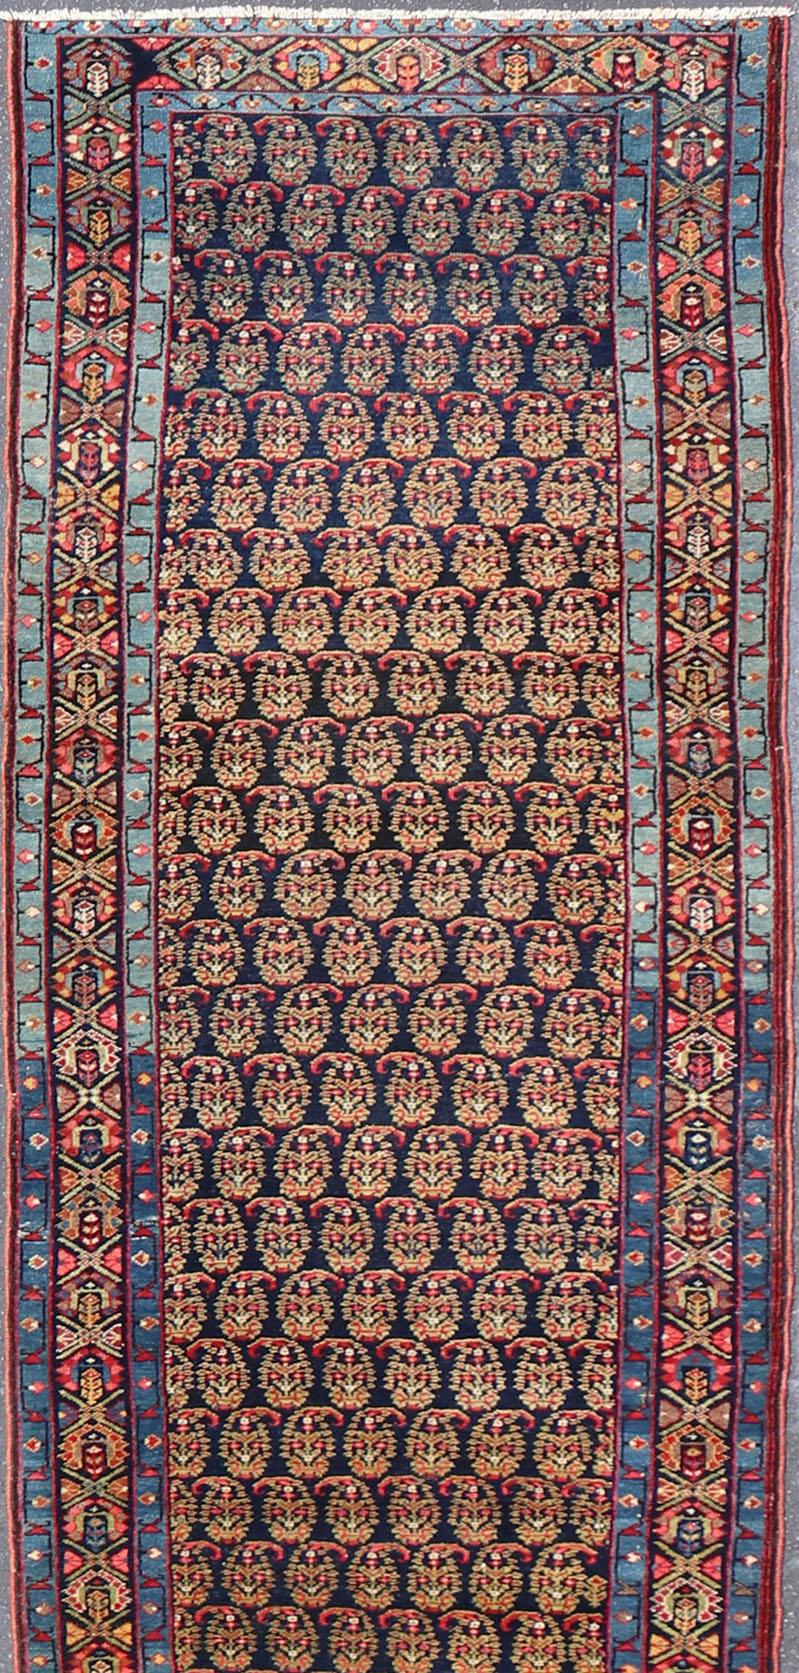 Maße 3'7 x 18'7

Dieser antike persische Malayer hat einen jeansblauen Schutz für die schmale Bandbordüre, die mit bescheidenen Motiven in verschiedenen Blau-, Grün-, Gelb- und Rosatönen verziert ist. Das dunkle Feld beherbergt ein klassisches